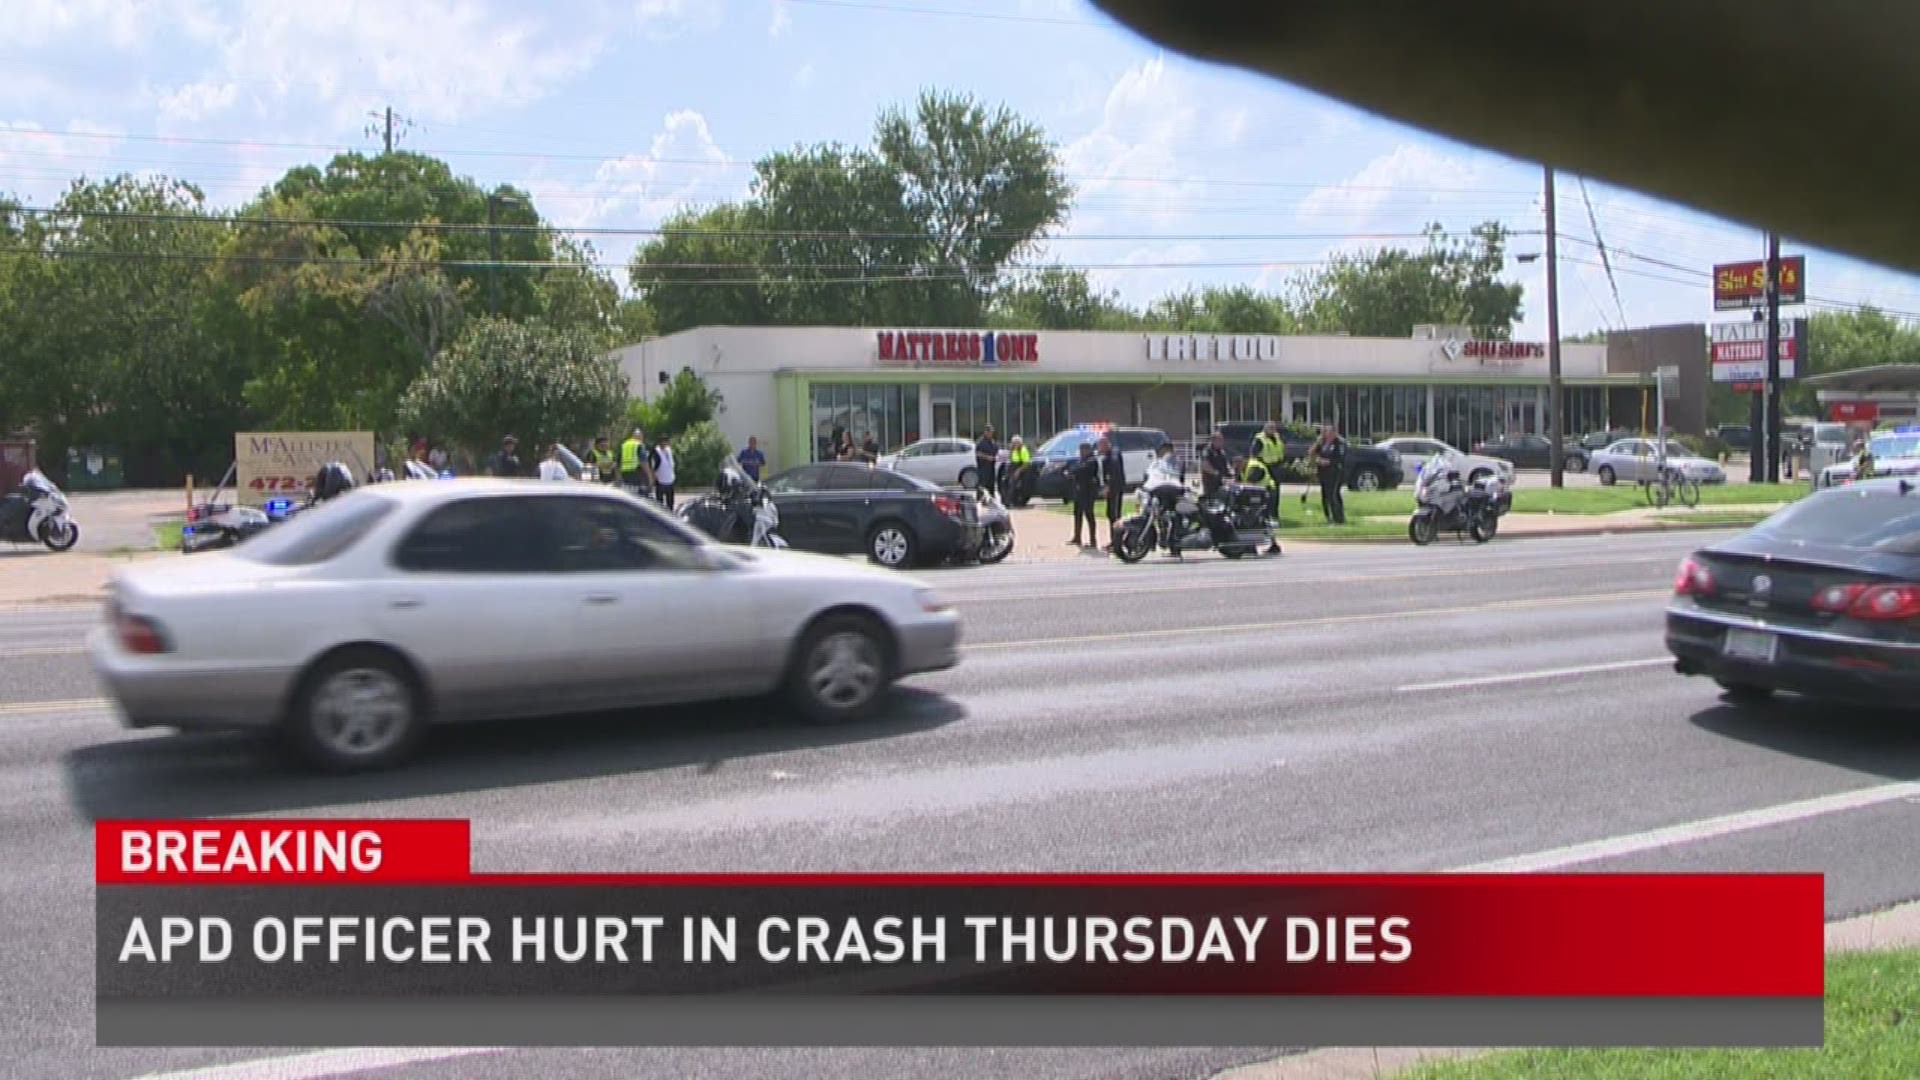 APD officer hurt in Thursday crash dies